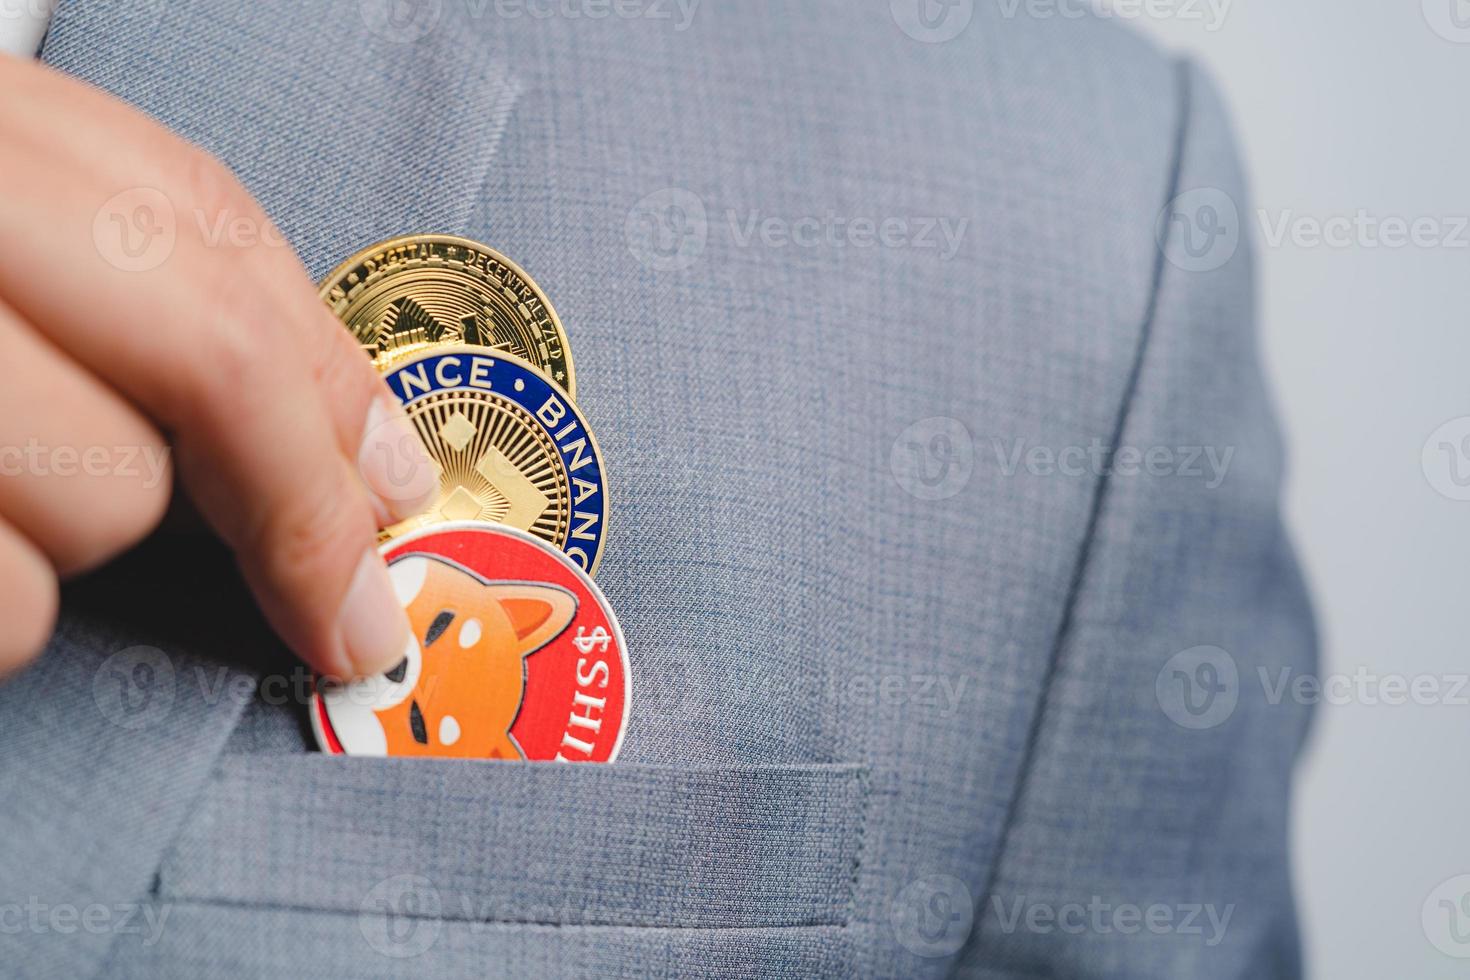 goldene bitcoin-münze shiba-münze, binance-münze bnb-gruppe enthalten mit handverlesener kryptowährung im anzug geschäftsmann mit blauem anzug. abgelegt und abgelegt und mir gegeben. Nahaufnahme und Makro. foto